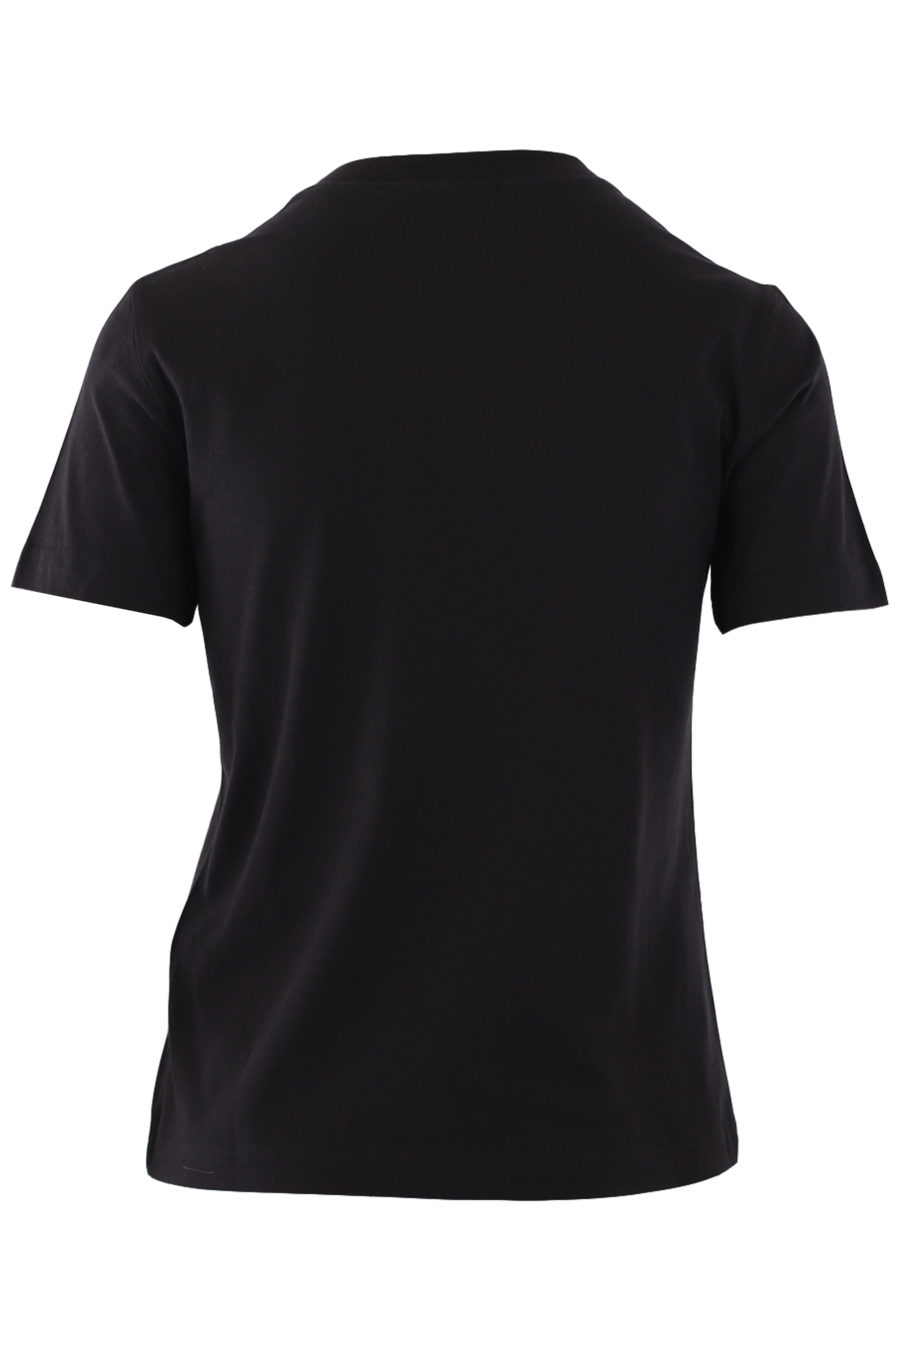 T-shirt noir avec logo multicolore au centre - IMG 0829